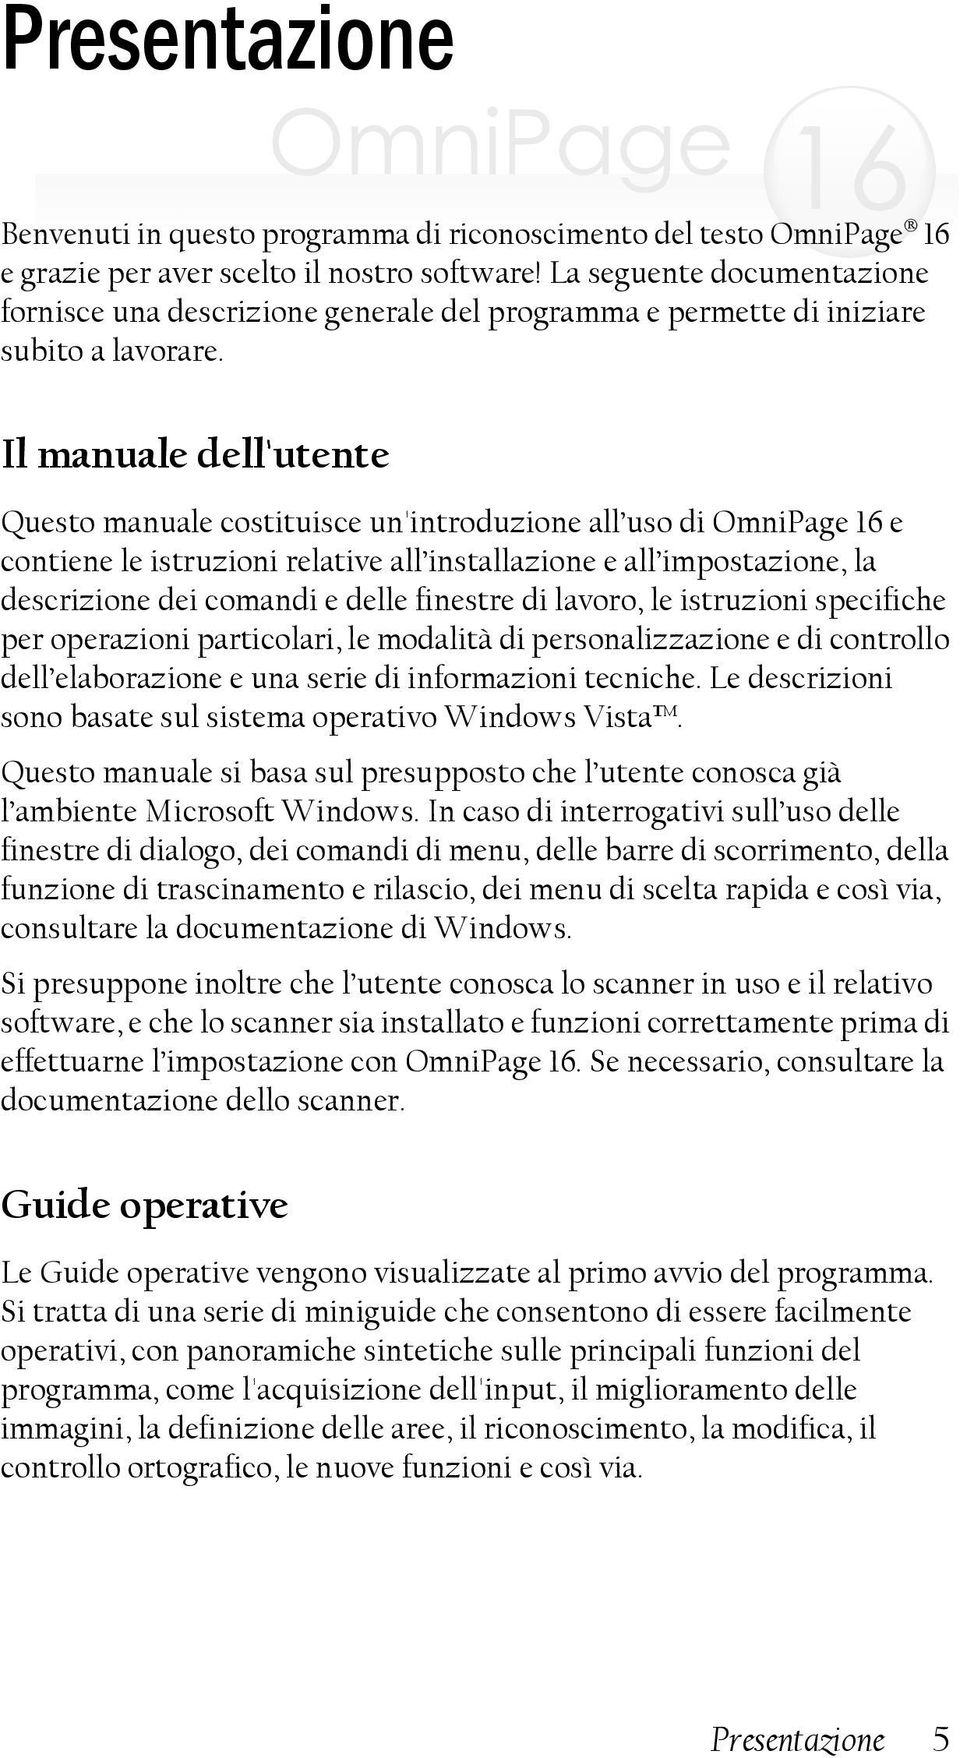 Il manuale dell'utente Questo manuale costituisce un'introduzione all uso di OmniPage 16 e contiene le istruzioni relative all installazione e all impostazione, la descrizione dei comandi e delle